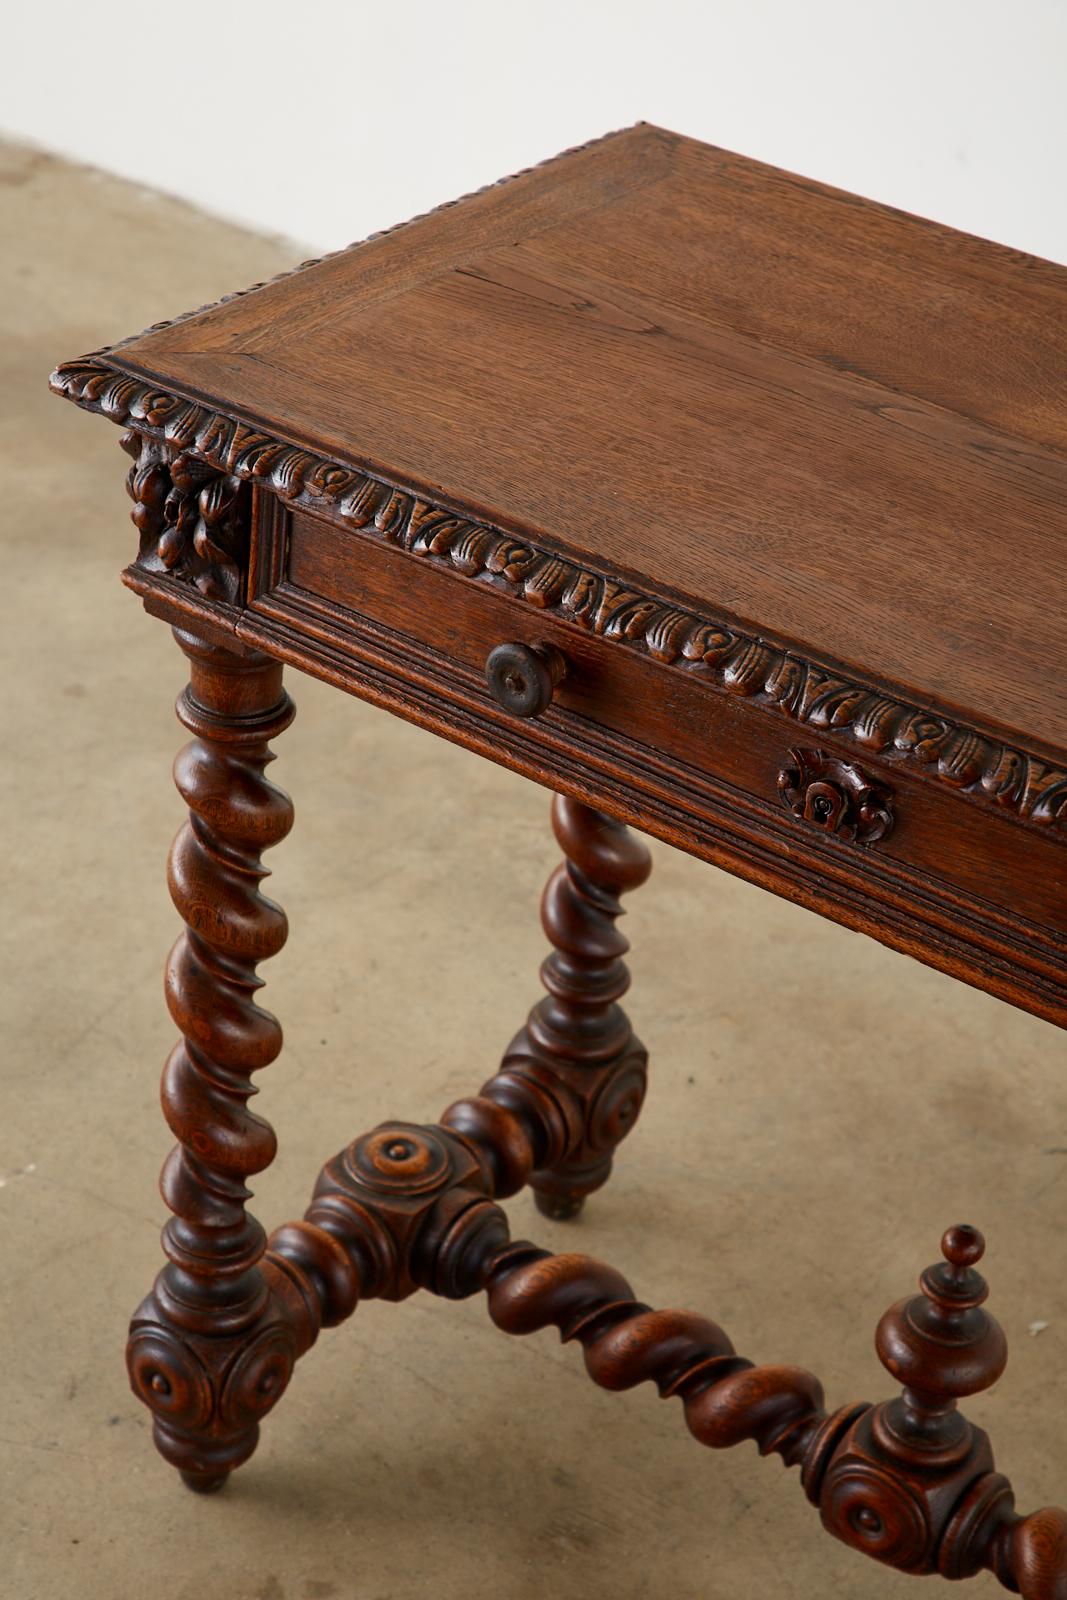 Hand-Crafted 19th Century French Oak Barley Twist Bureau Plat Desk For Sale